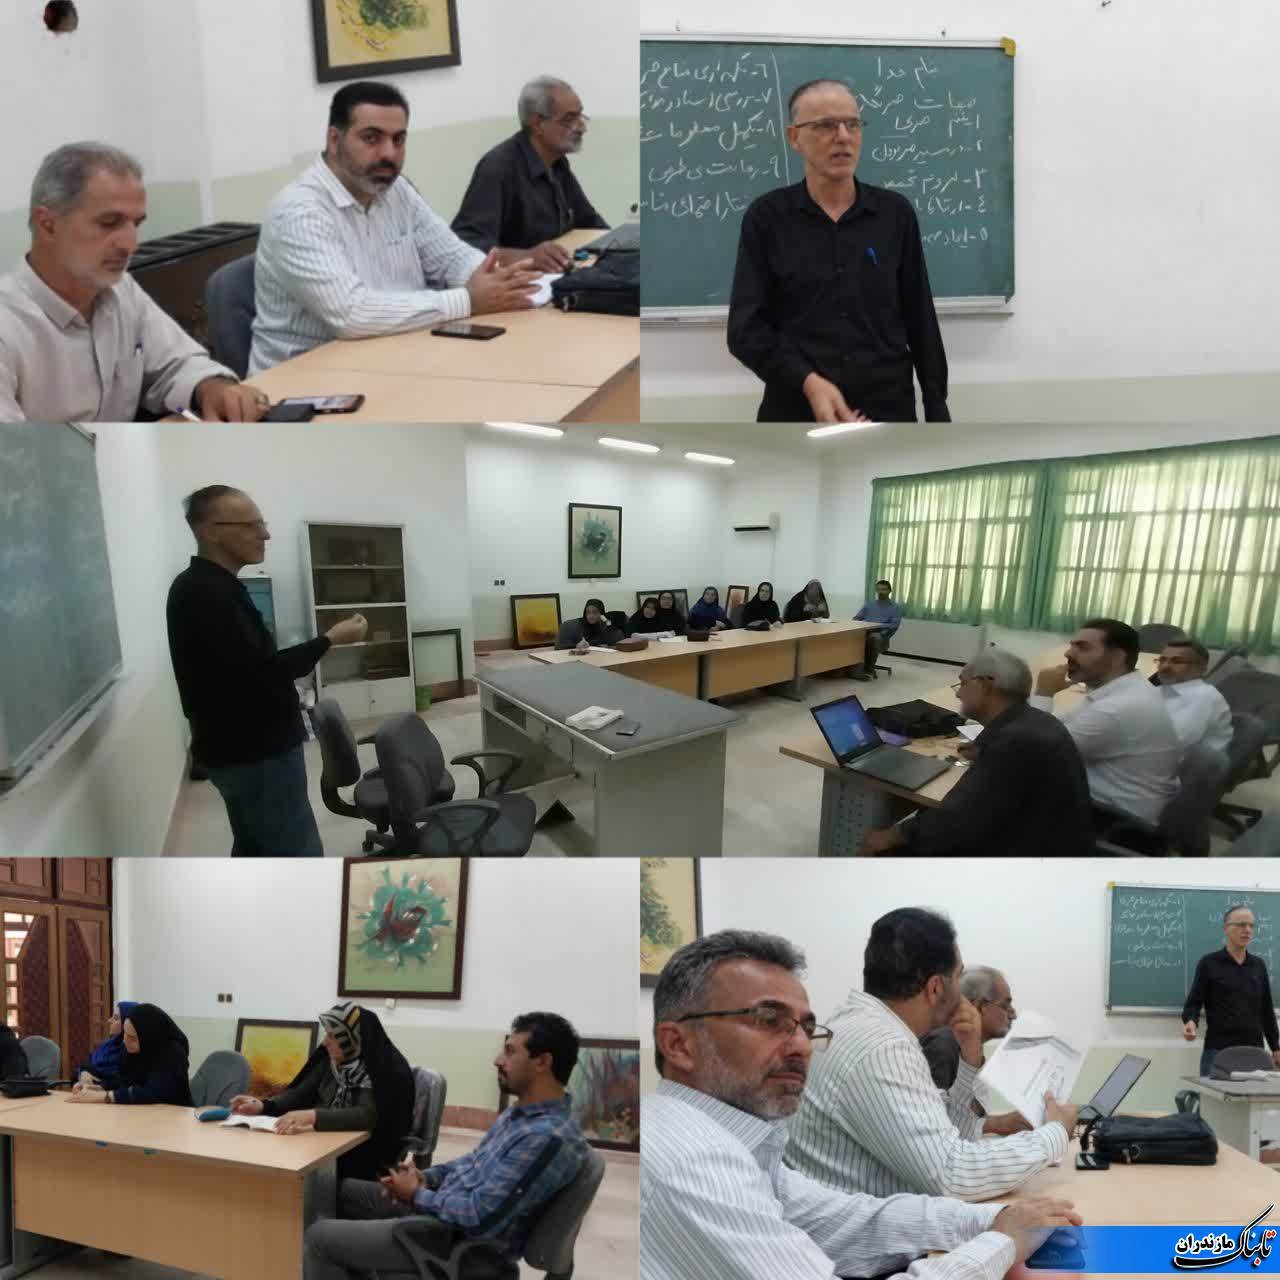 برگزاری کلاس آموزش خبرنگاری در شهرستان بابلسر+ تصاویر